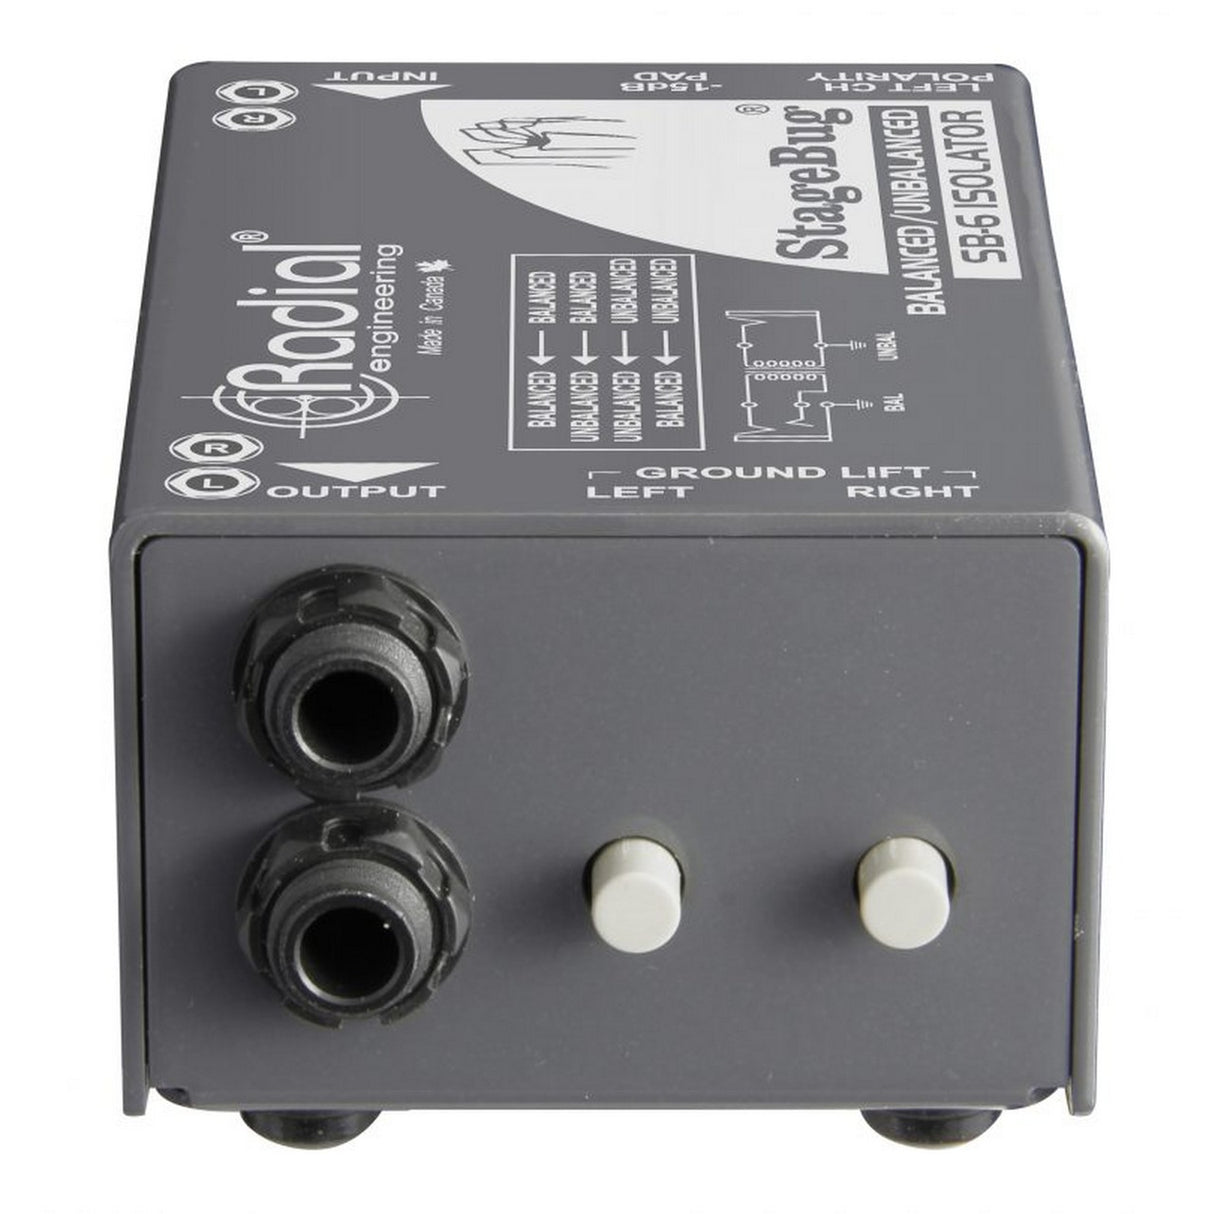 Radial StageBug SB-6 Passive Stereo Line Isolator (Used)